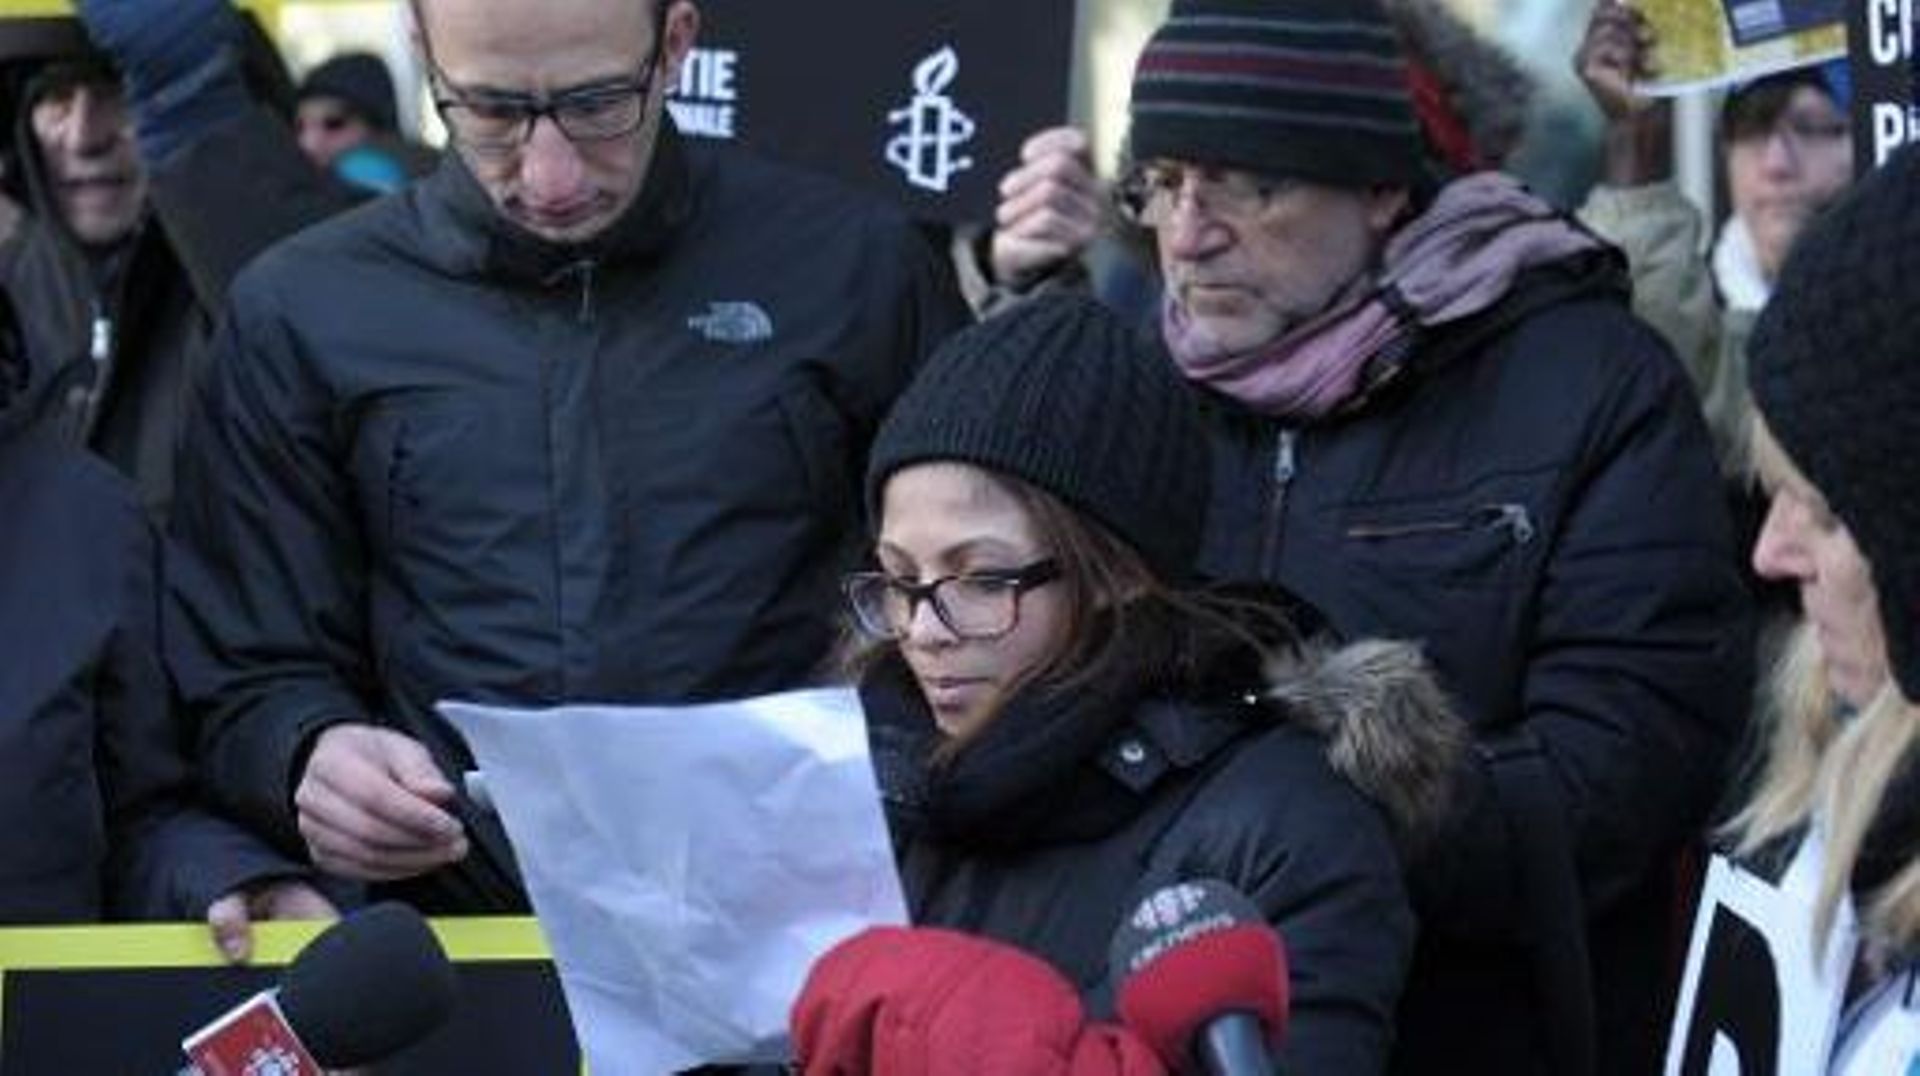 Ensaf Haidar, femme du blogueur Raef Badawi, demande sa libération lors d'un rassemblement de soutien organisé à Montréal, le 13 janvier 2015 